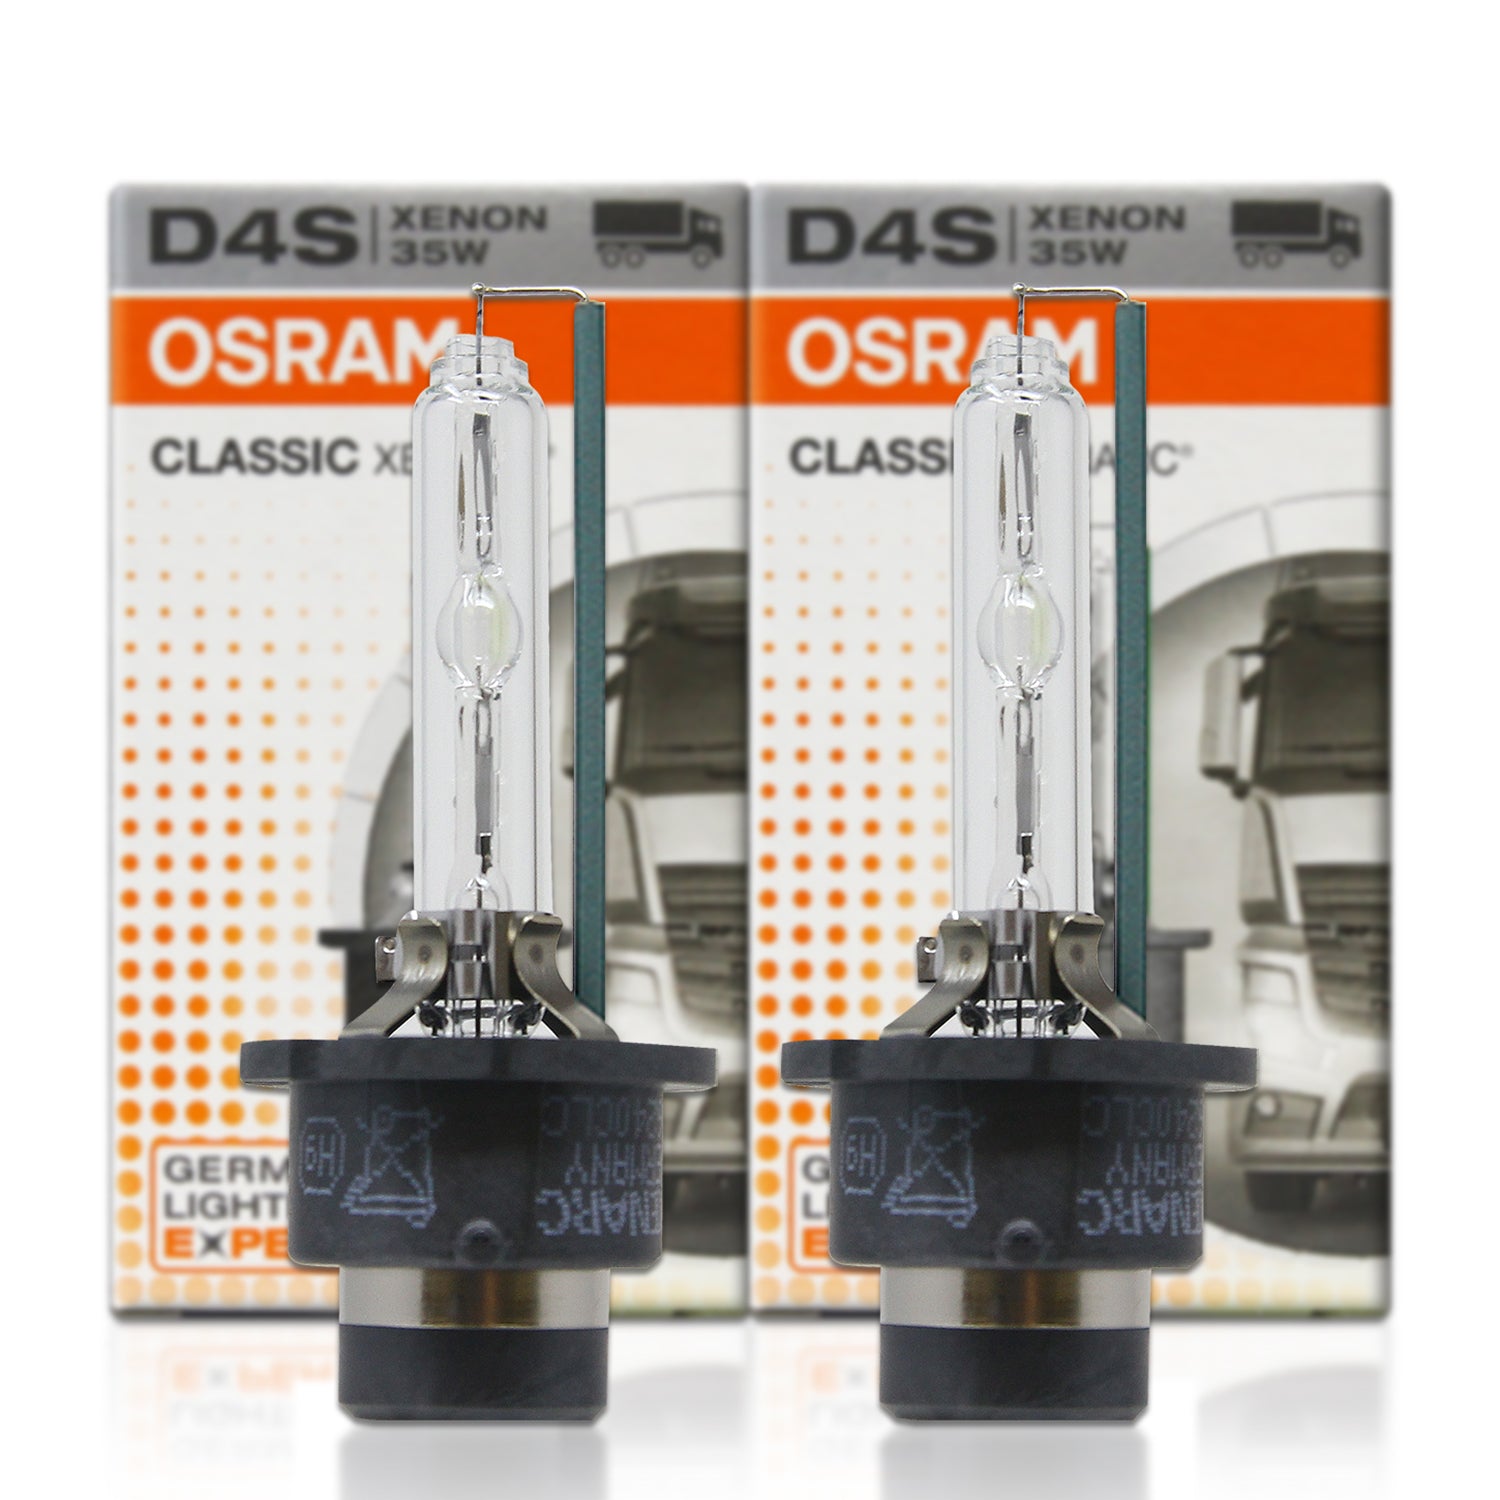 D1S 66140CLC Osram Classic Xenarc 